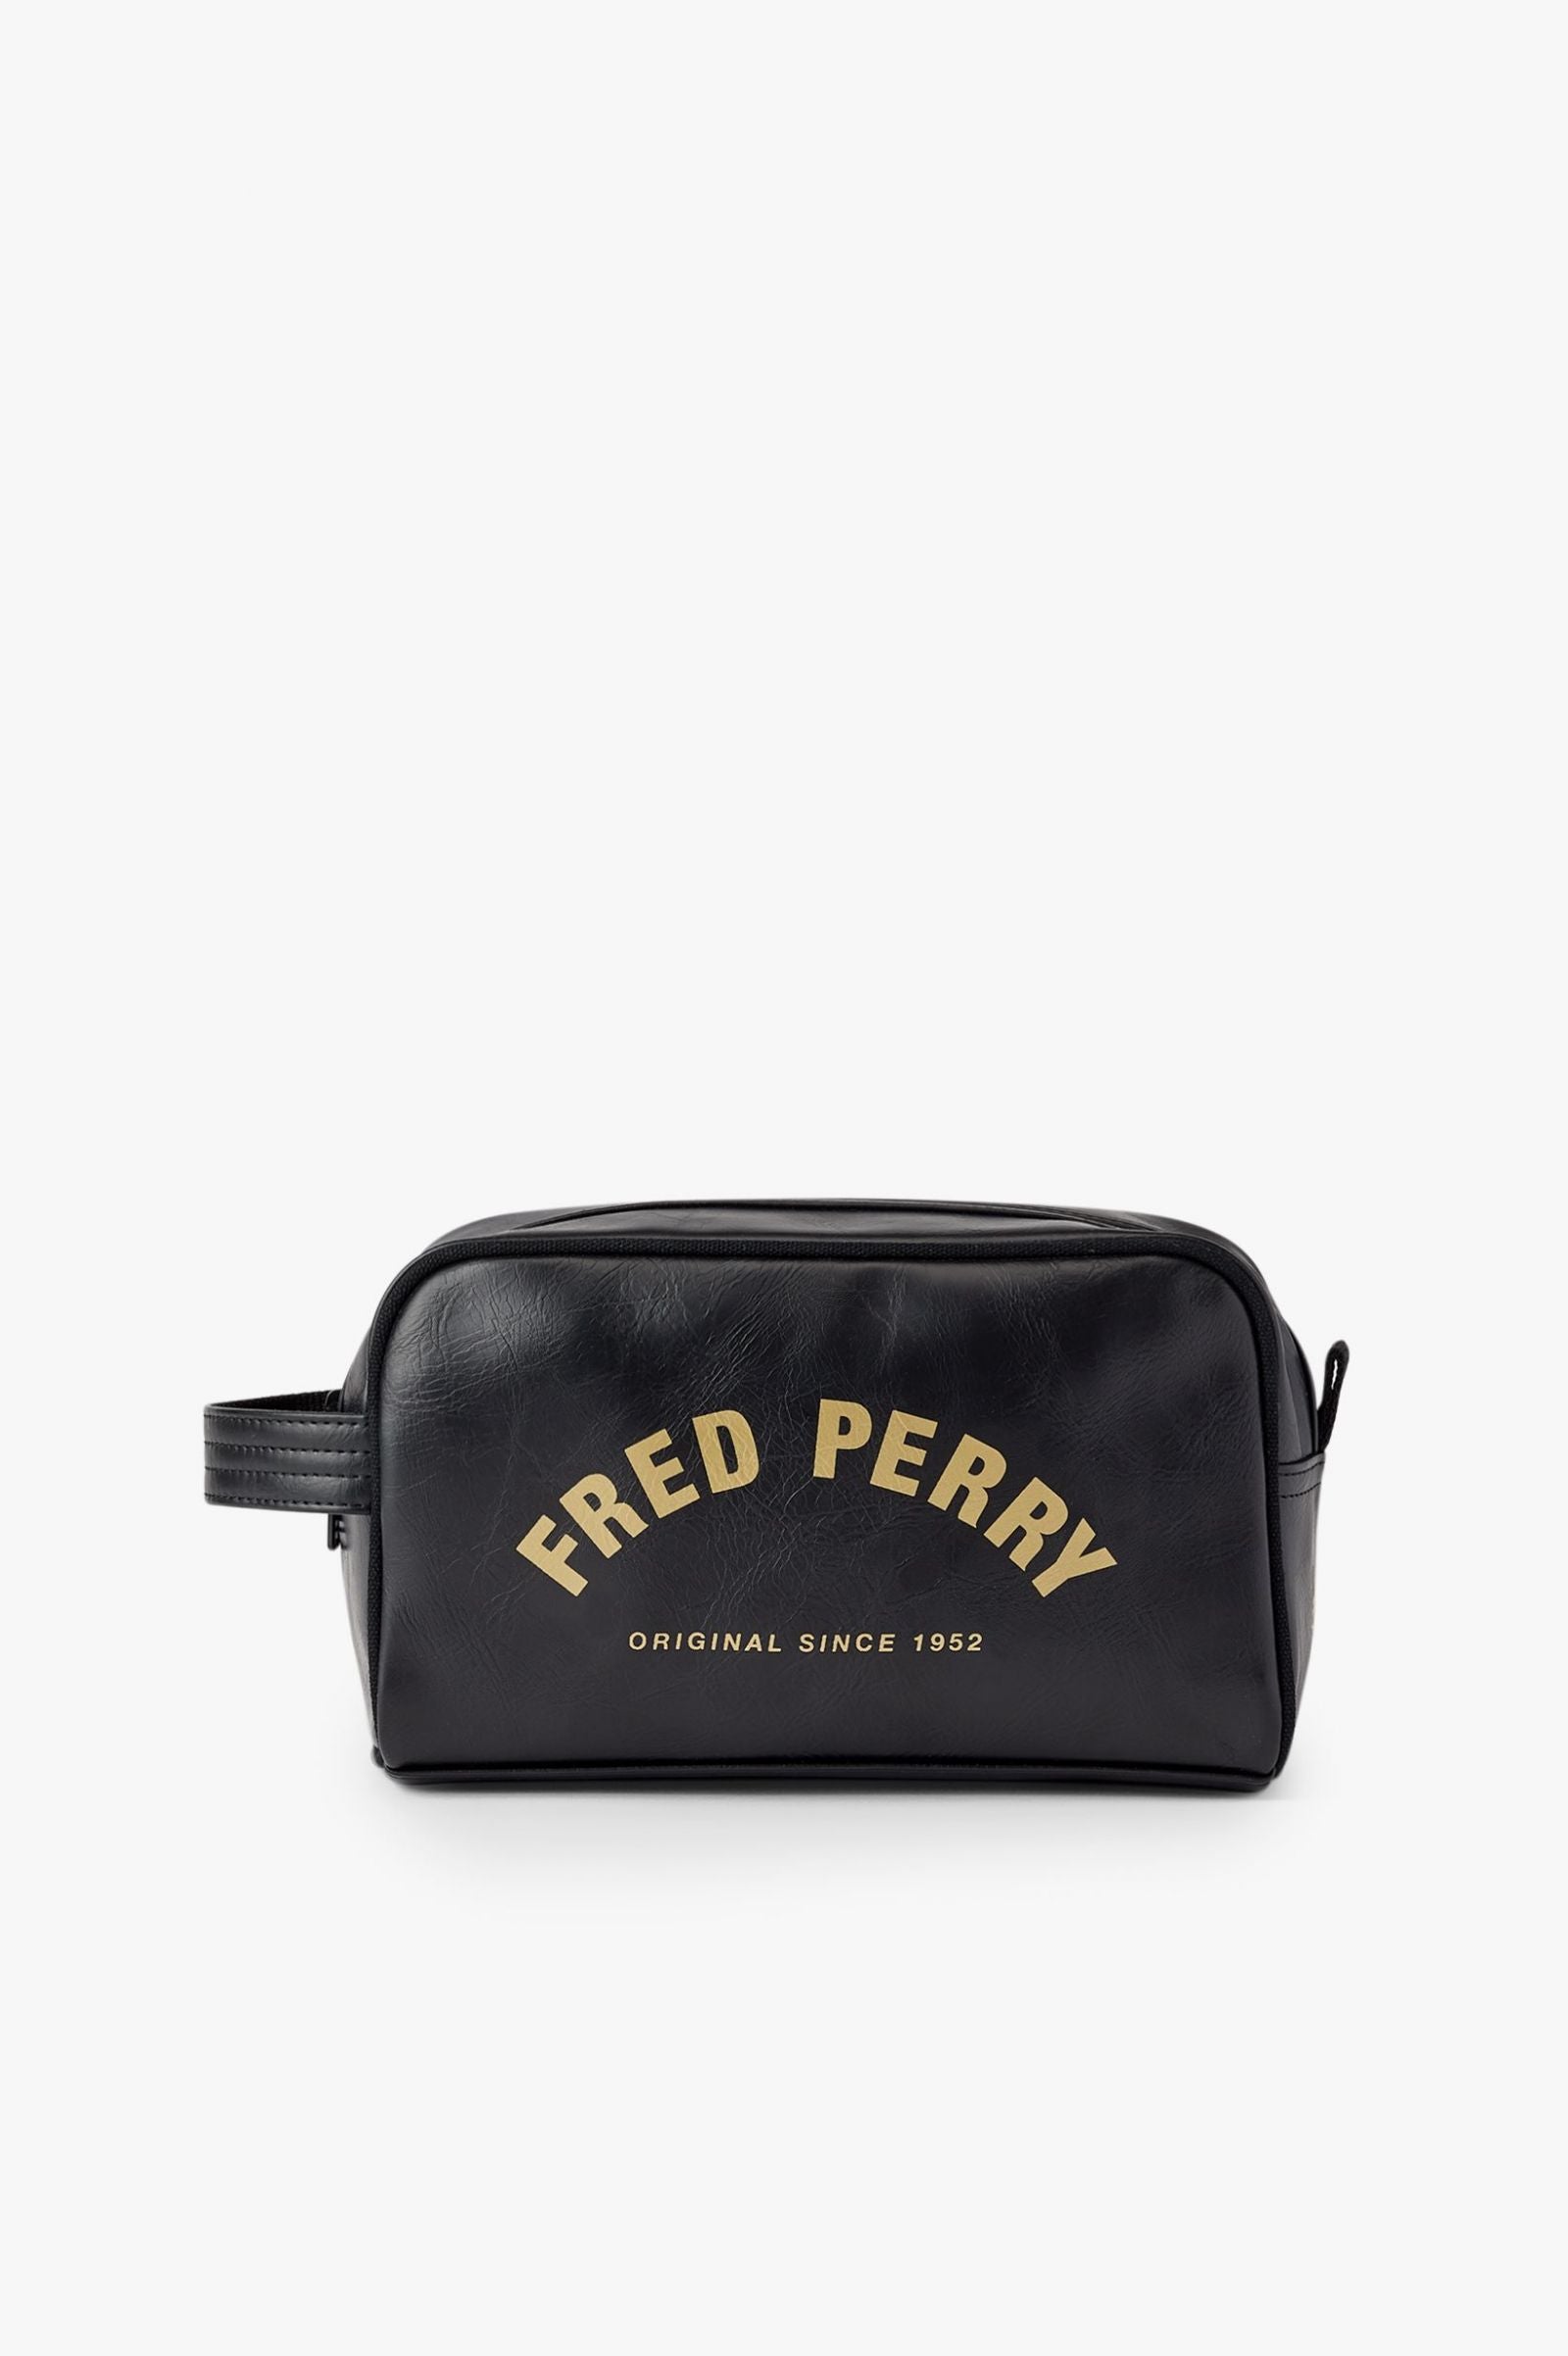 Fred Perry Laurel Wreath Branded Shoulder Bag In Black | ModeSens